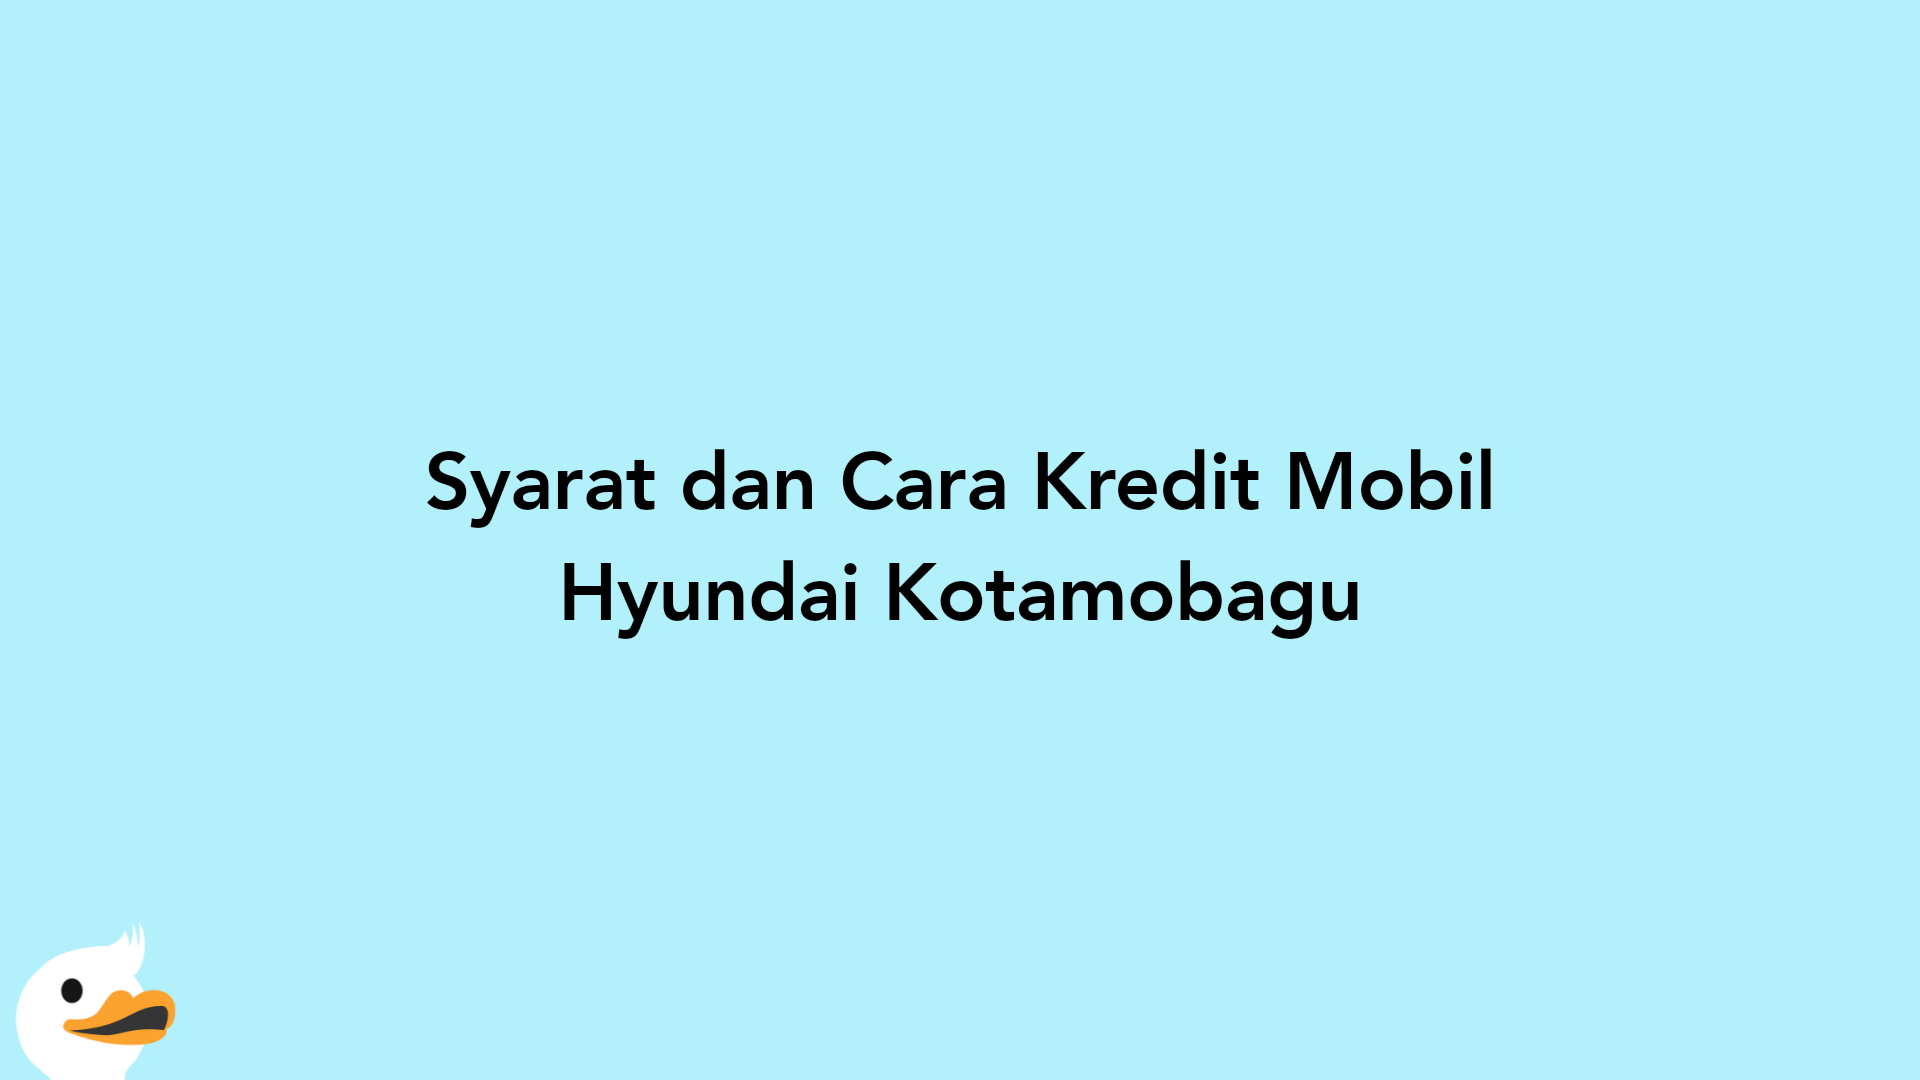 Syarat dan Cara Kredit Mobil Hyundai Kotamobagu